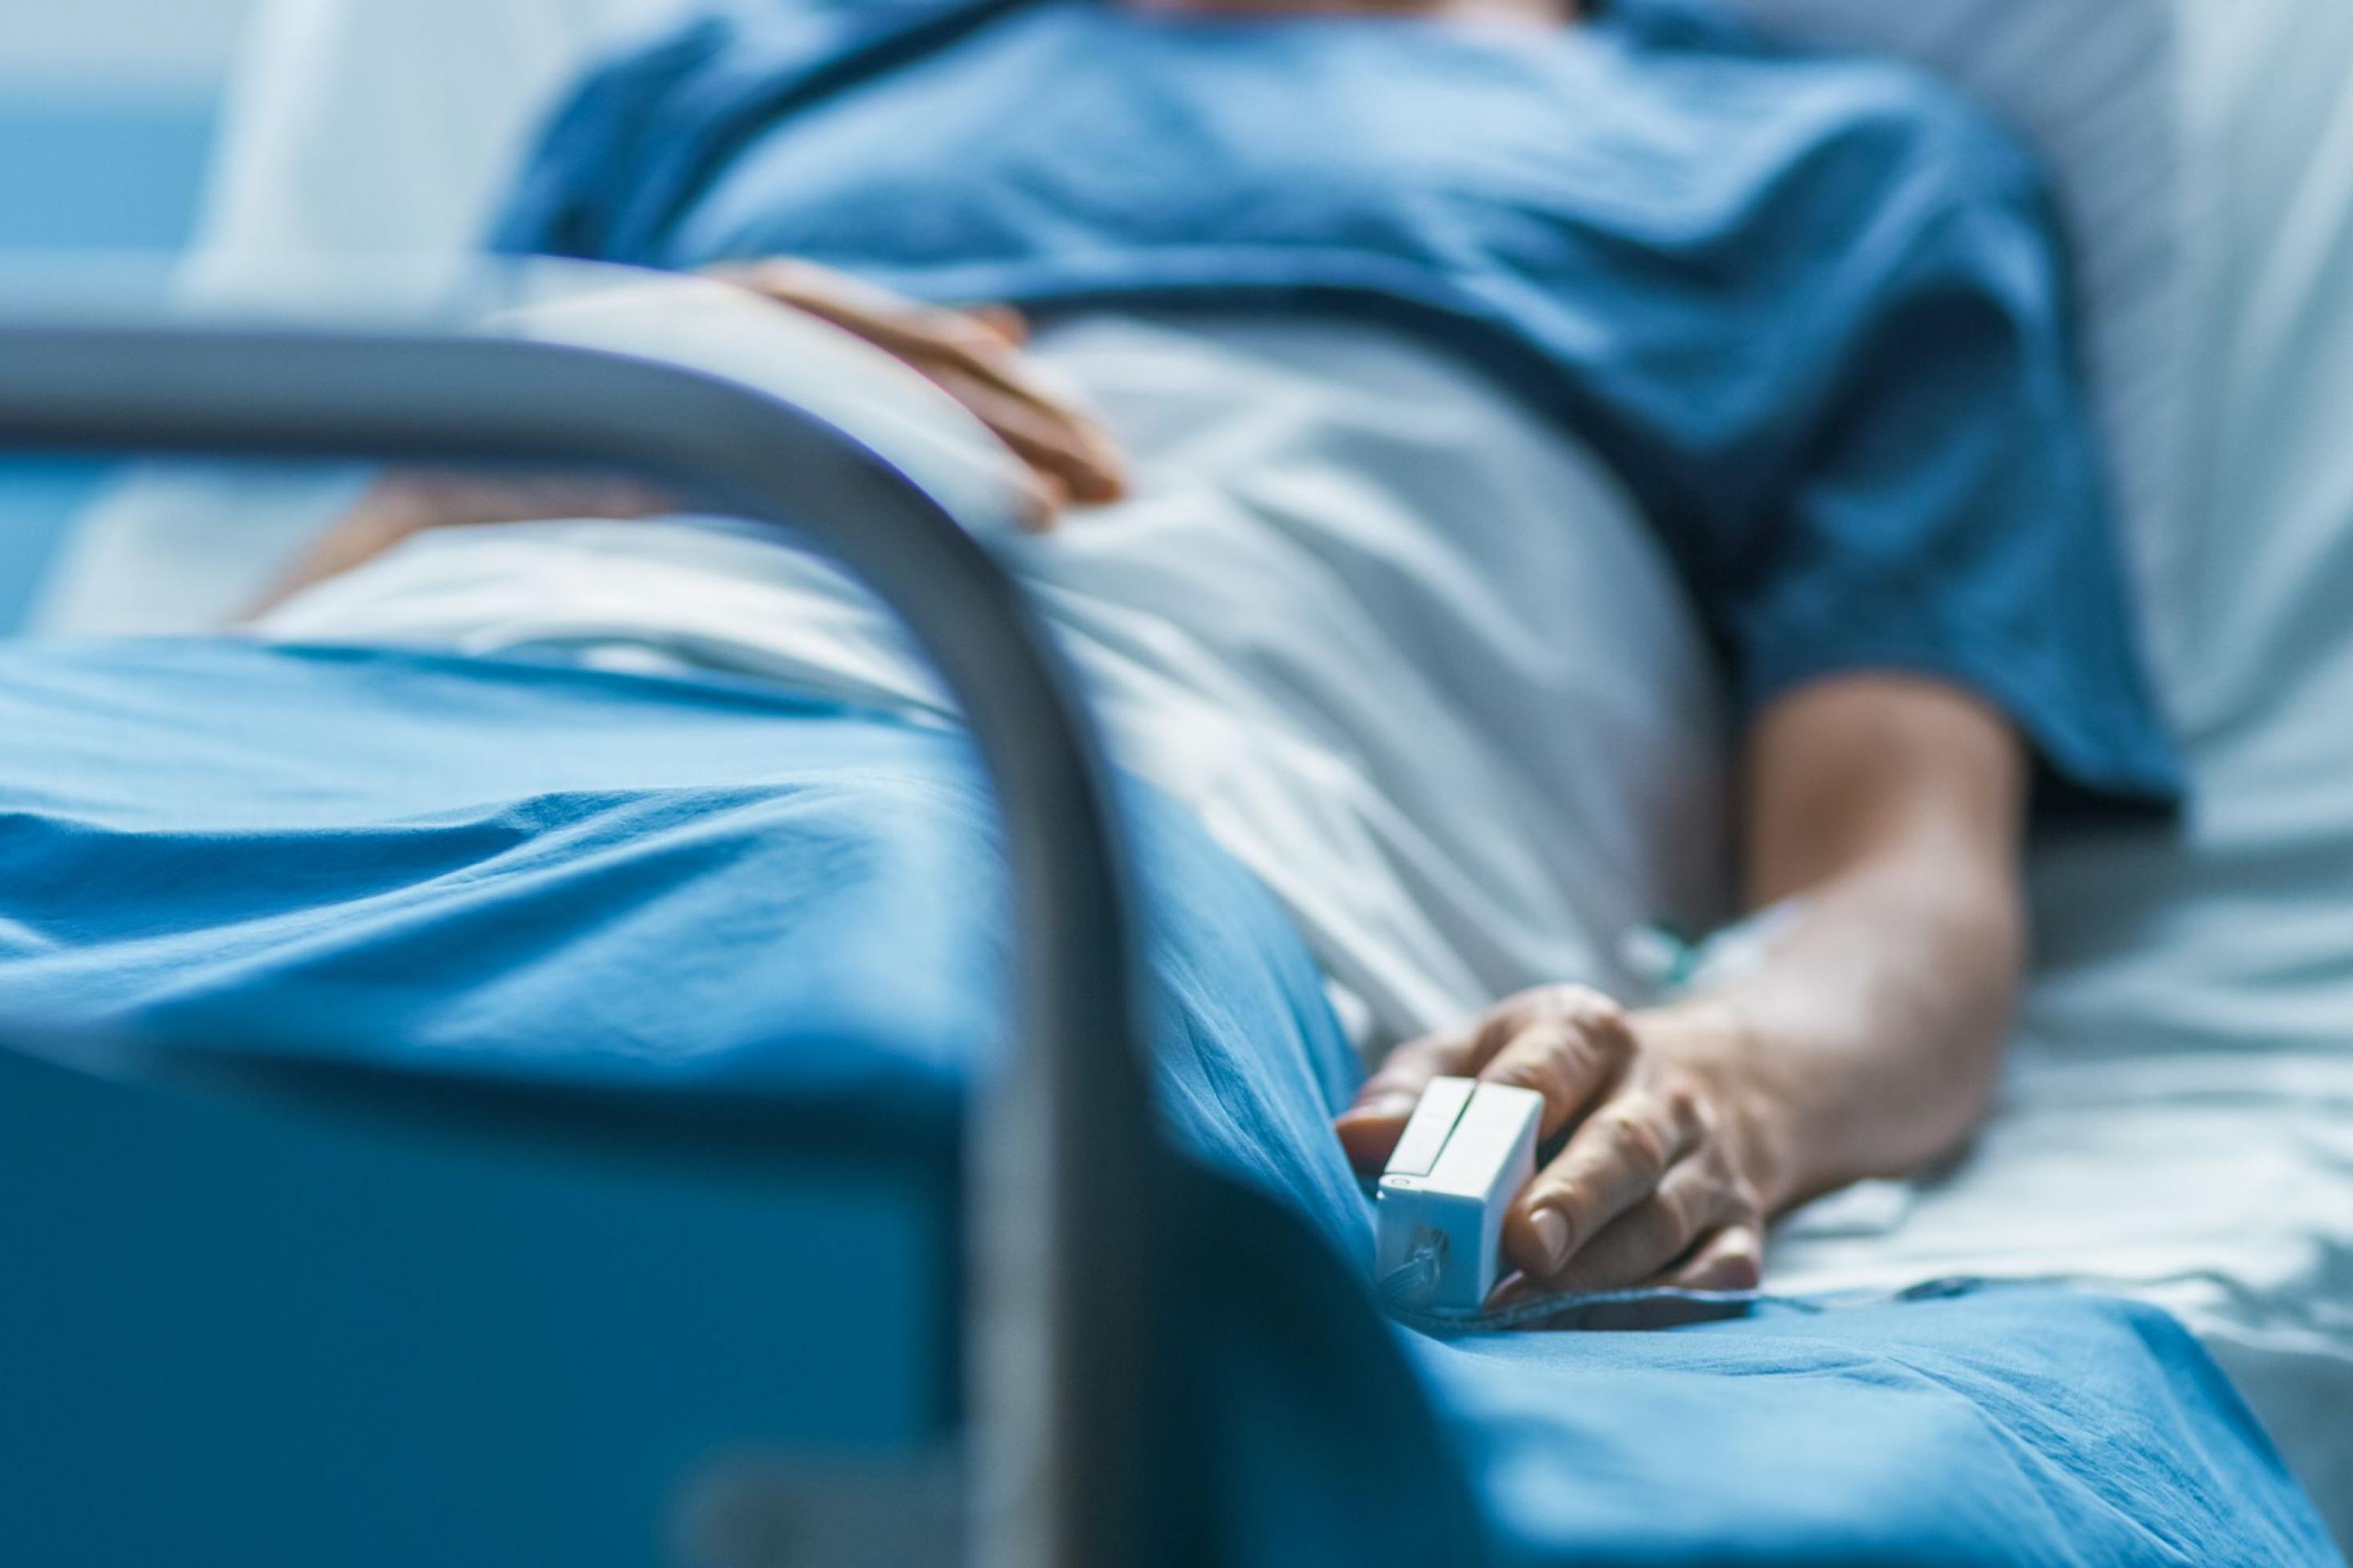 Ein Patient liegt im Krankenhaus im Bett. Mit einer Patientenverfügung kann er festlegen, wie die weitere Behandlung bei schwerer Krankheit aussehen soll.